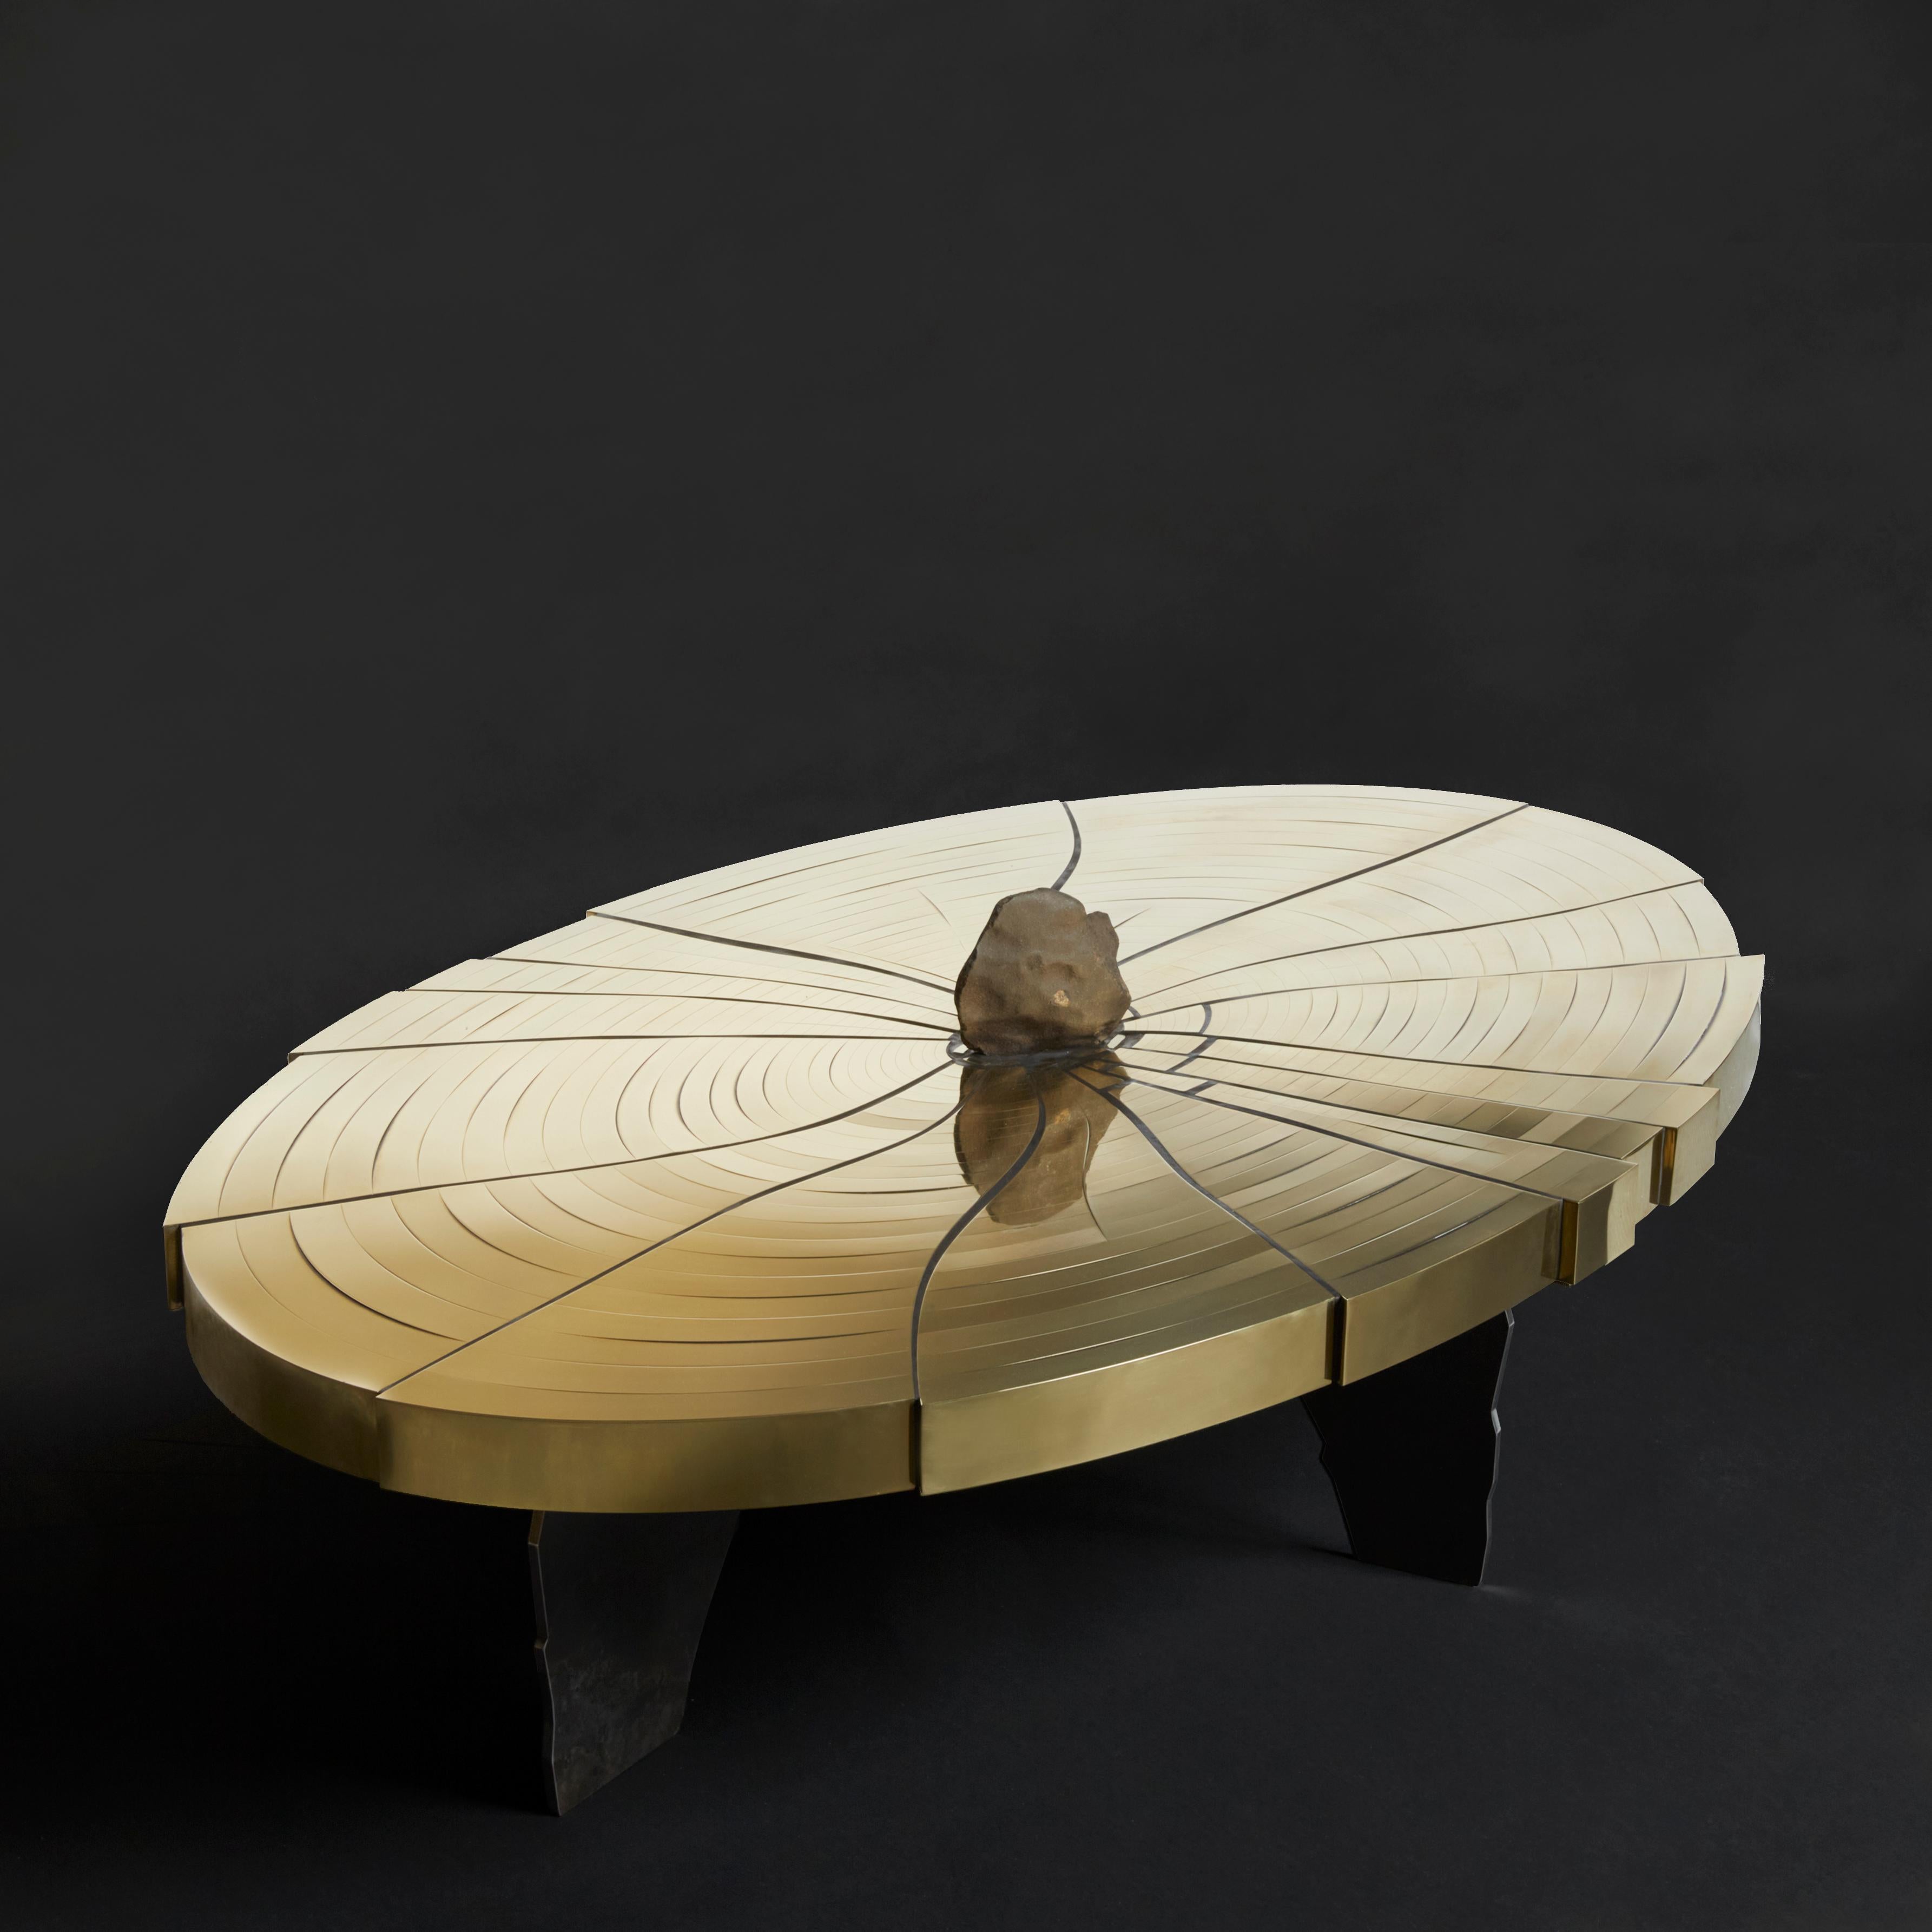 Modern Fracture Cosmique Brass & Black Steel Coffee Table w/Meteorite by Erwan Boulloud For Sale